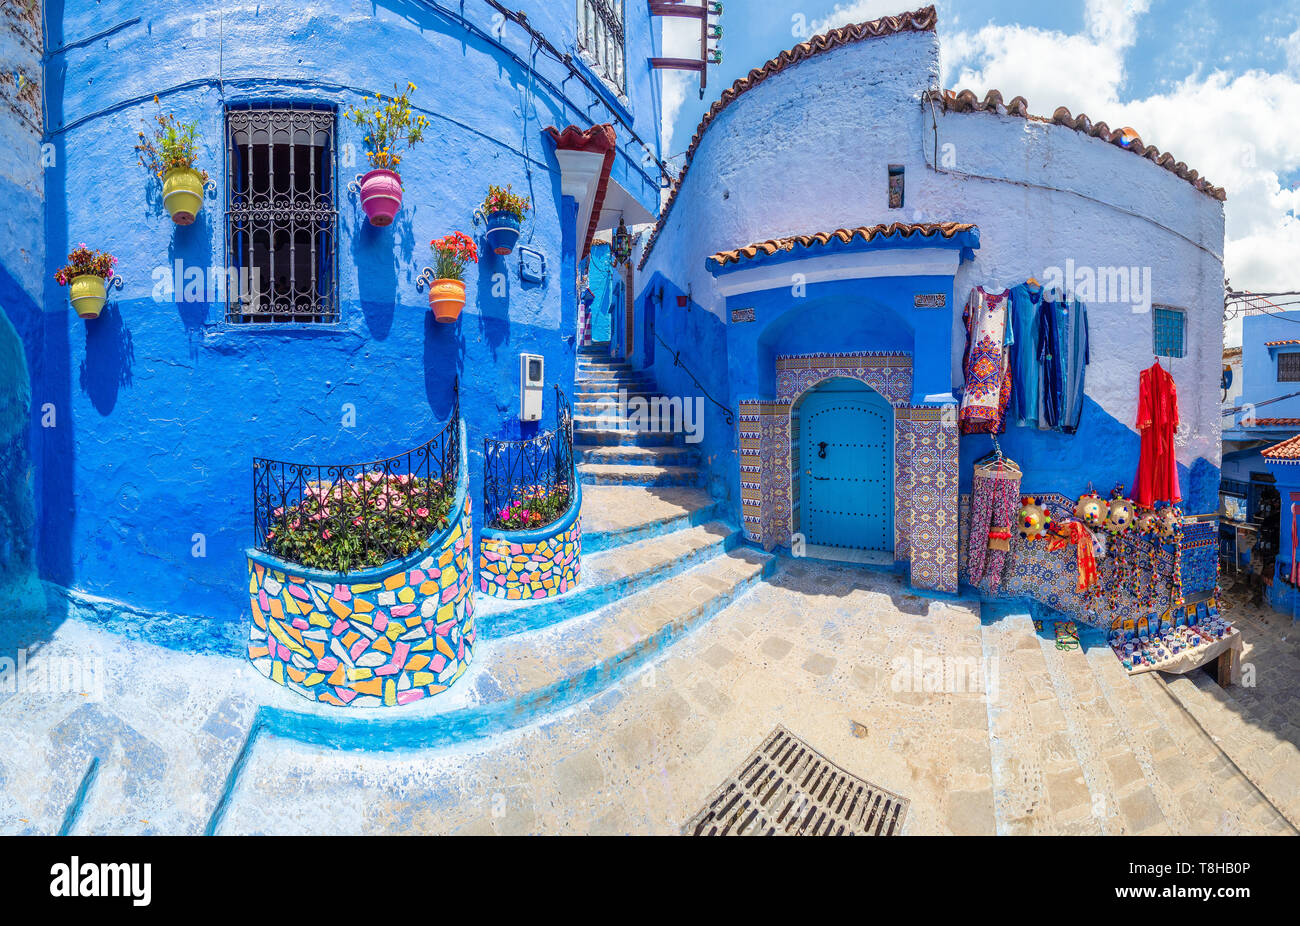 La rue et l'architecture étonnante de Chefchaouen, Maroc, Afrique du Nord Banque D'Images